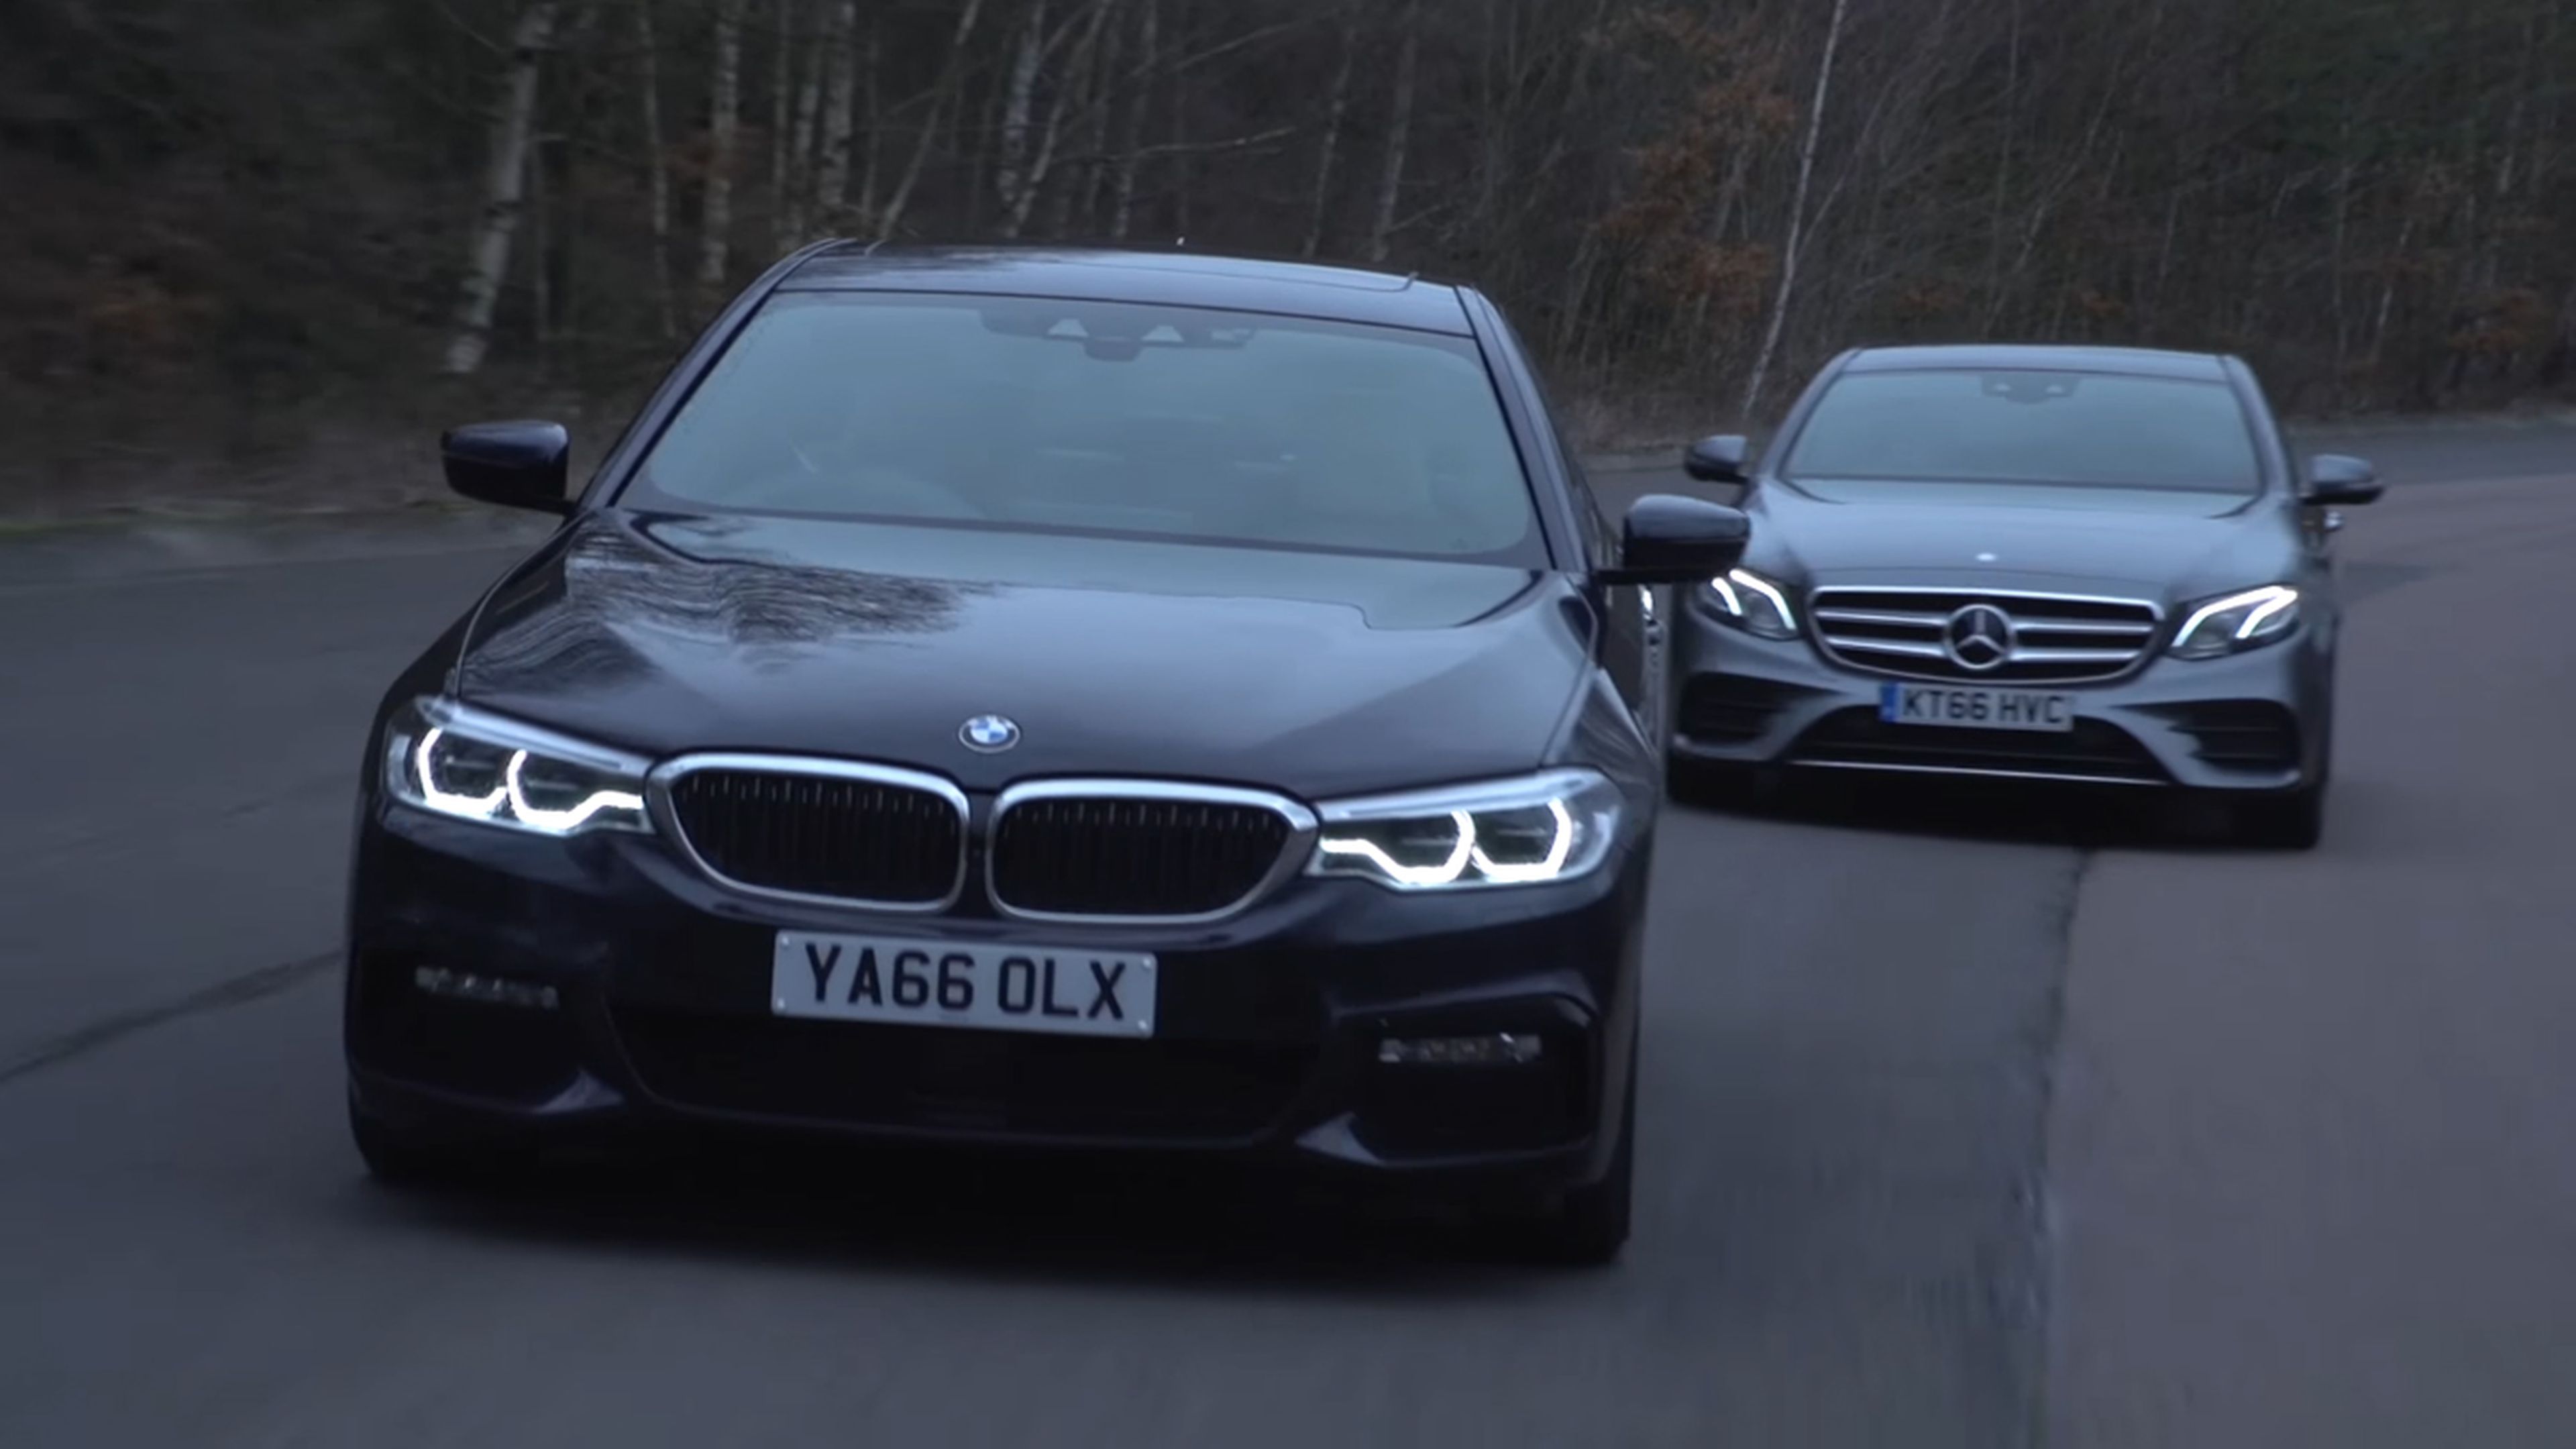 Vídeo: el nuevo BMW Serie 5 contra el Mercedes Clase E